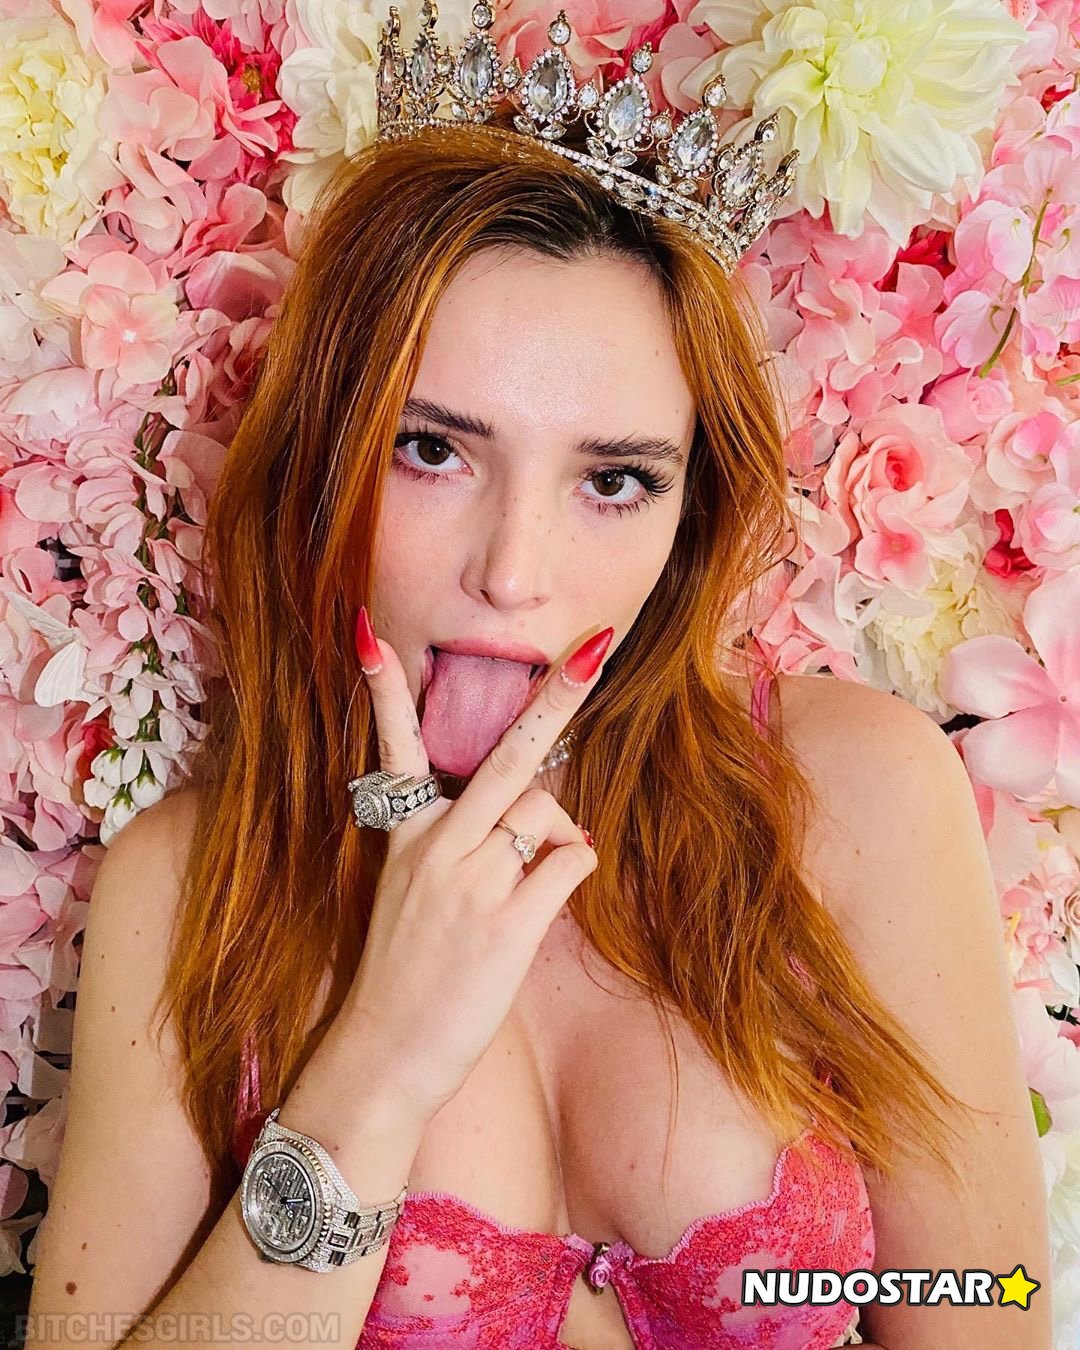 Bella Thorne – bellathorne OnlyFans Sexy Leaks (30 Photos)